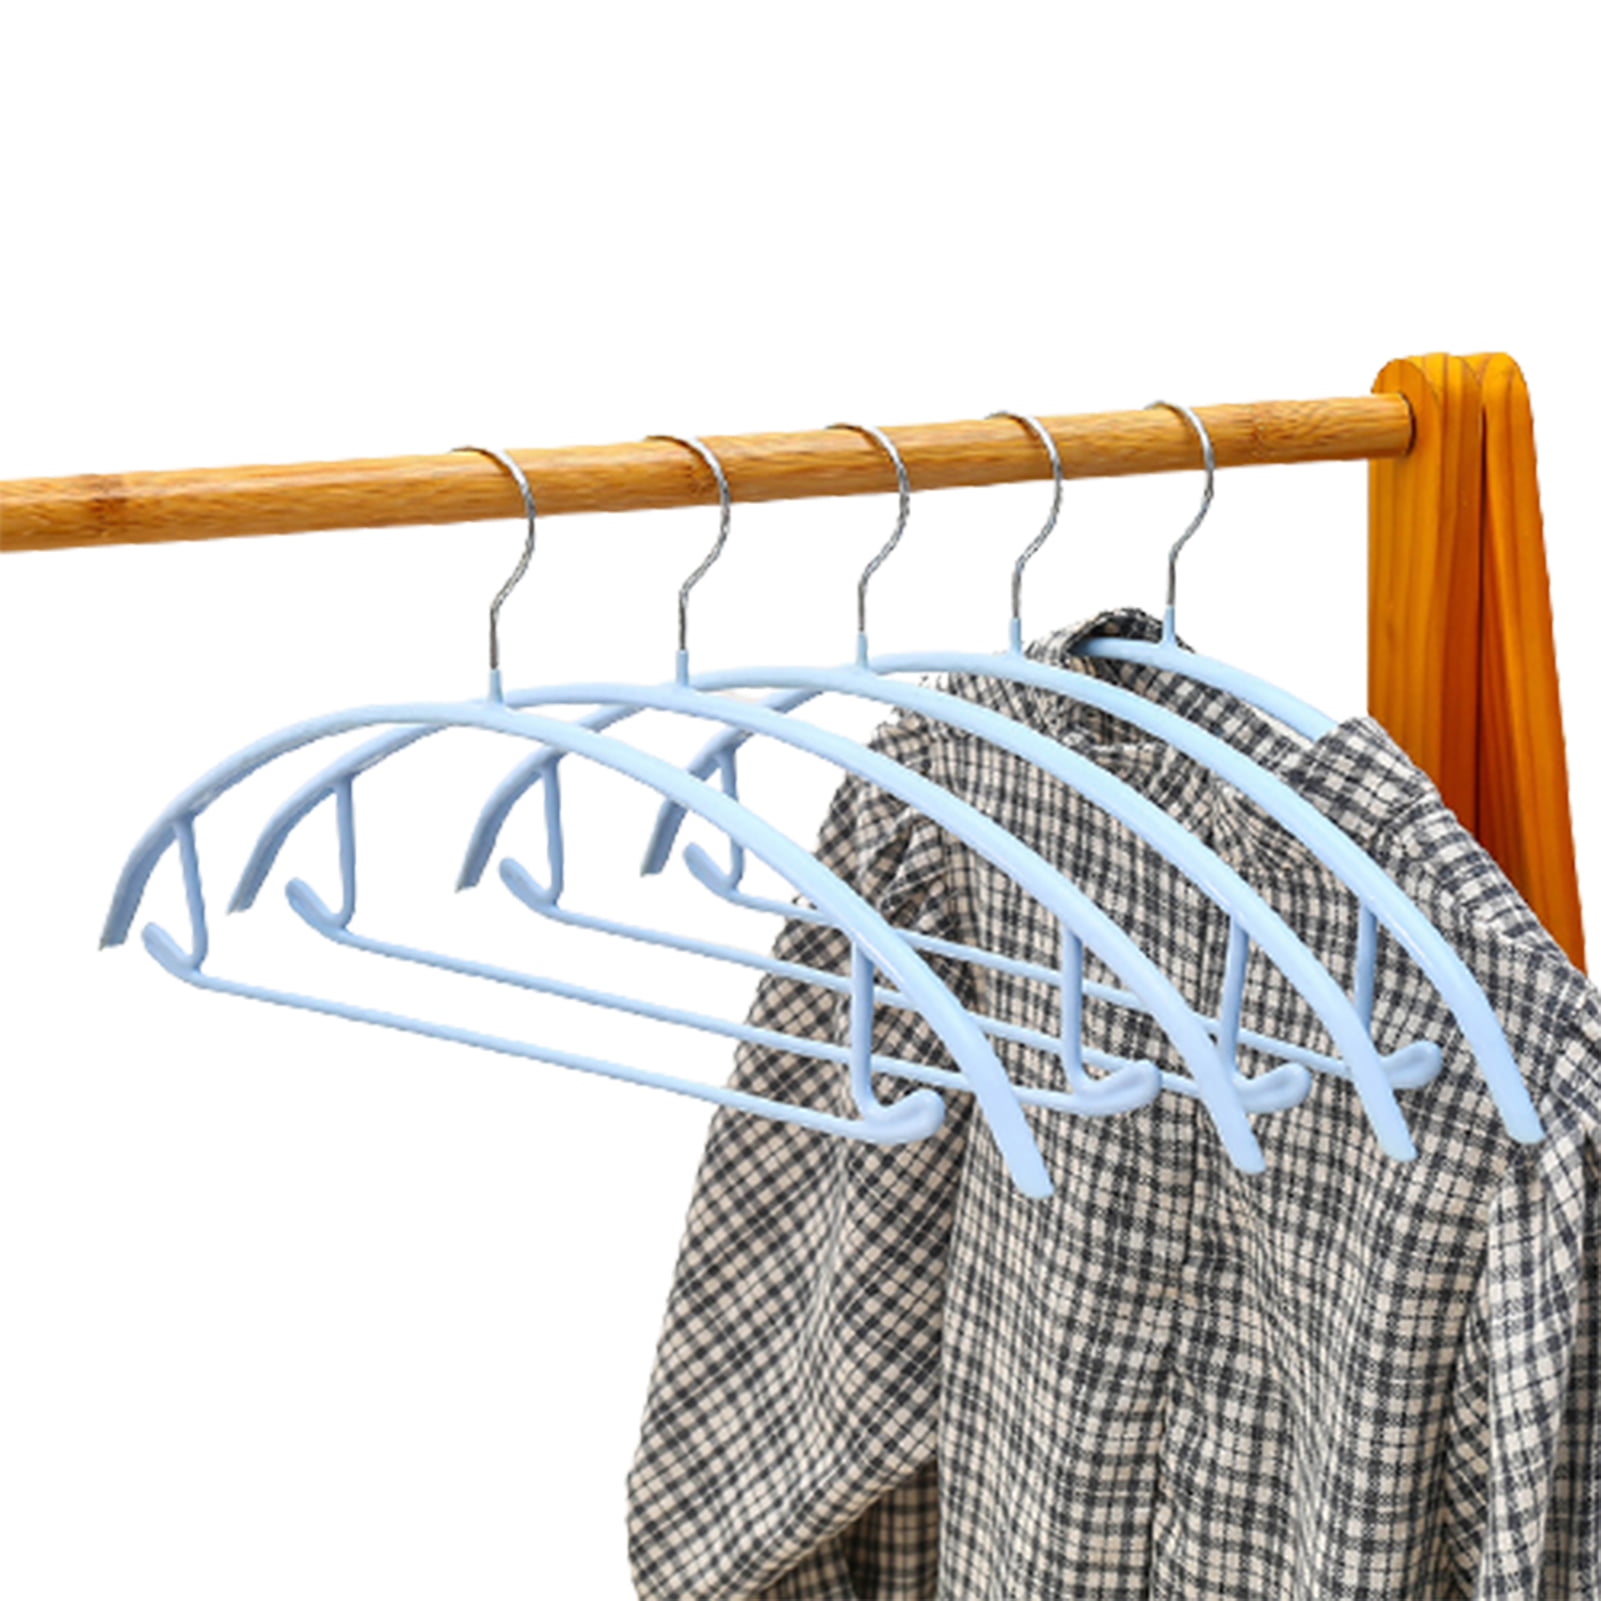 Can Hold 8 Yard Kilt Longer Sturdier Clips Mens New Improved Kilt Hanger 